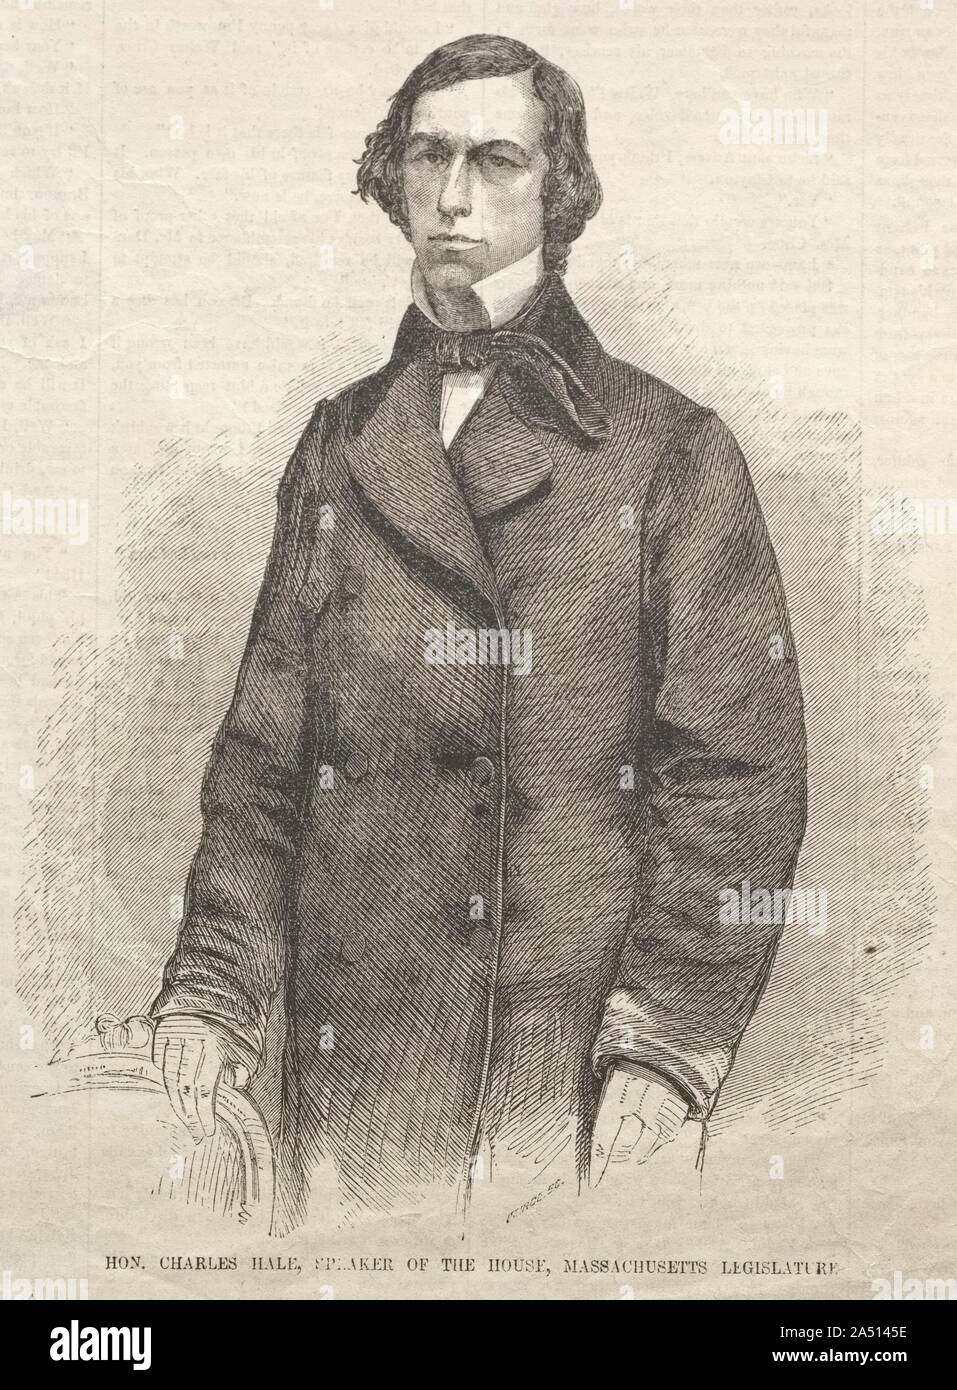 Hon. Charles Hale, Speaker of the House, Massachusetts Legislature, 1859. Stock Photo